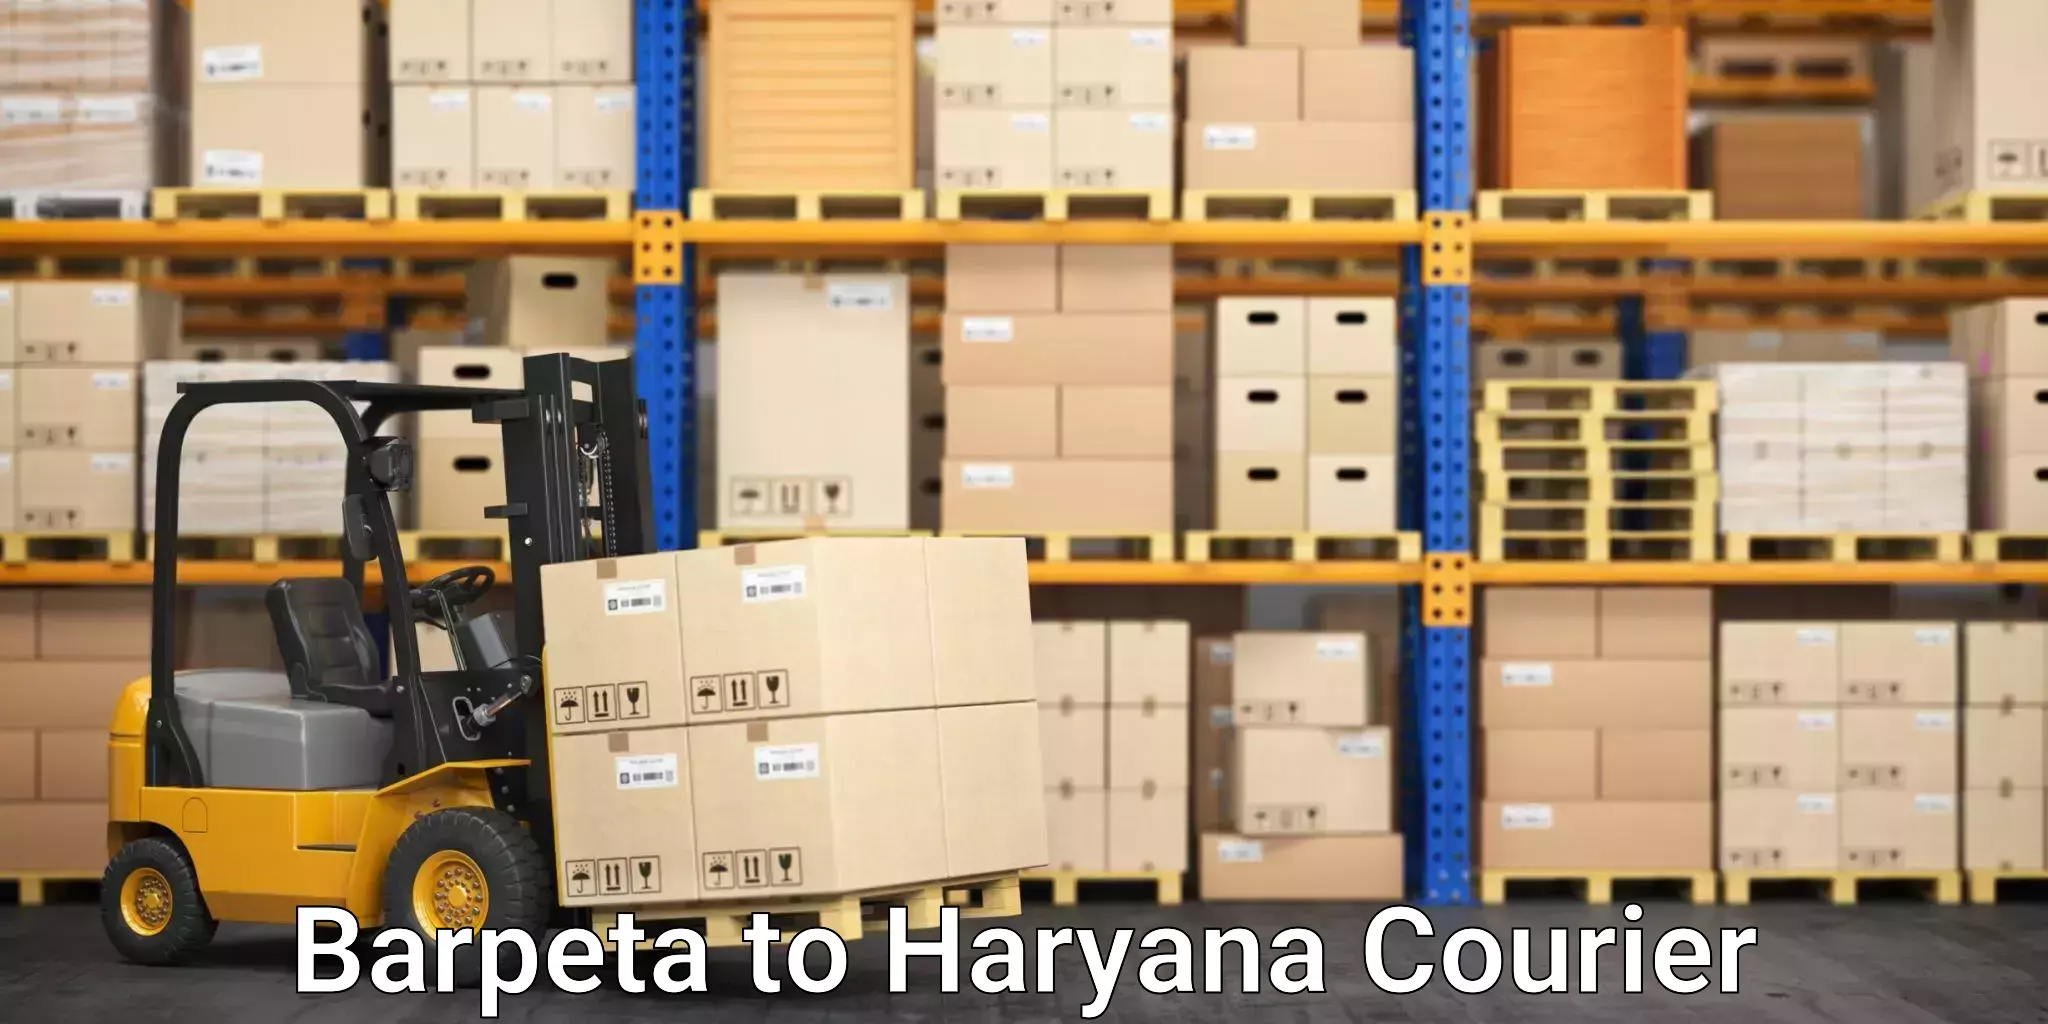 Efficient parcel service Barpeta to Rewari